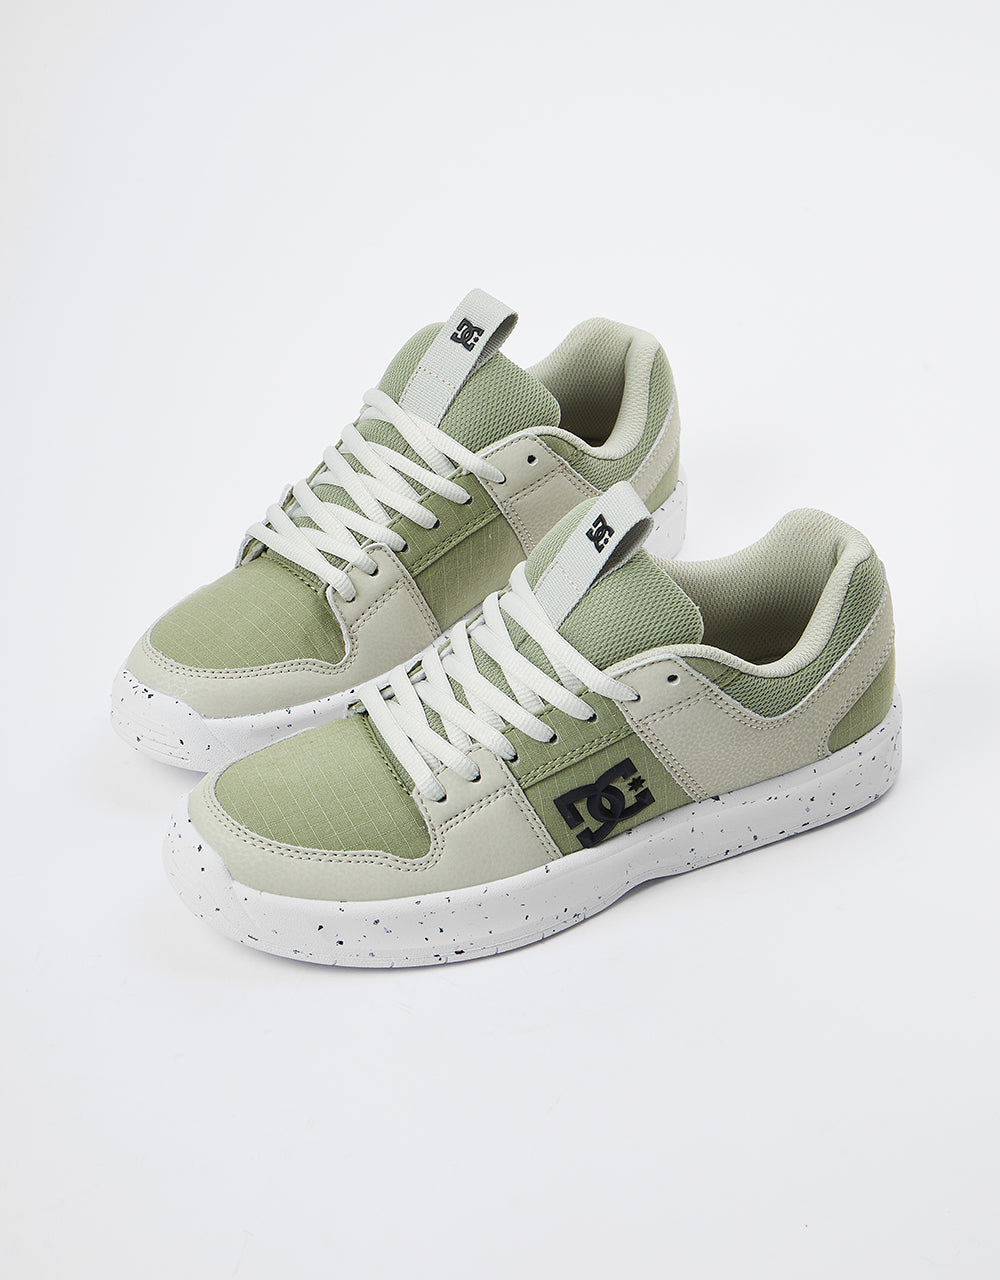 DC Lynx ZERO WASTE Skate Shoes - Tan/Green